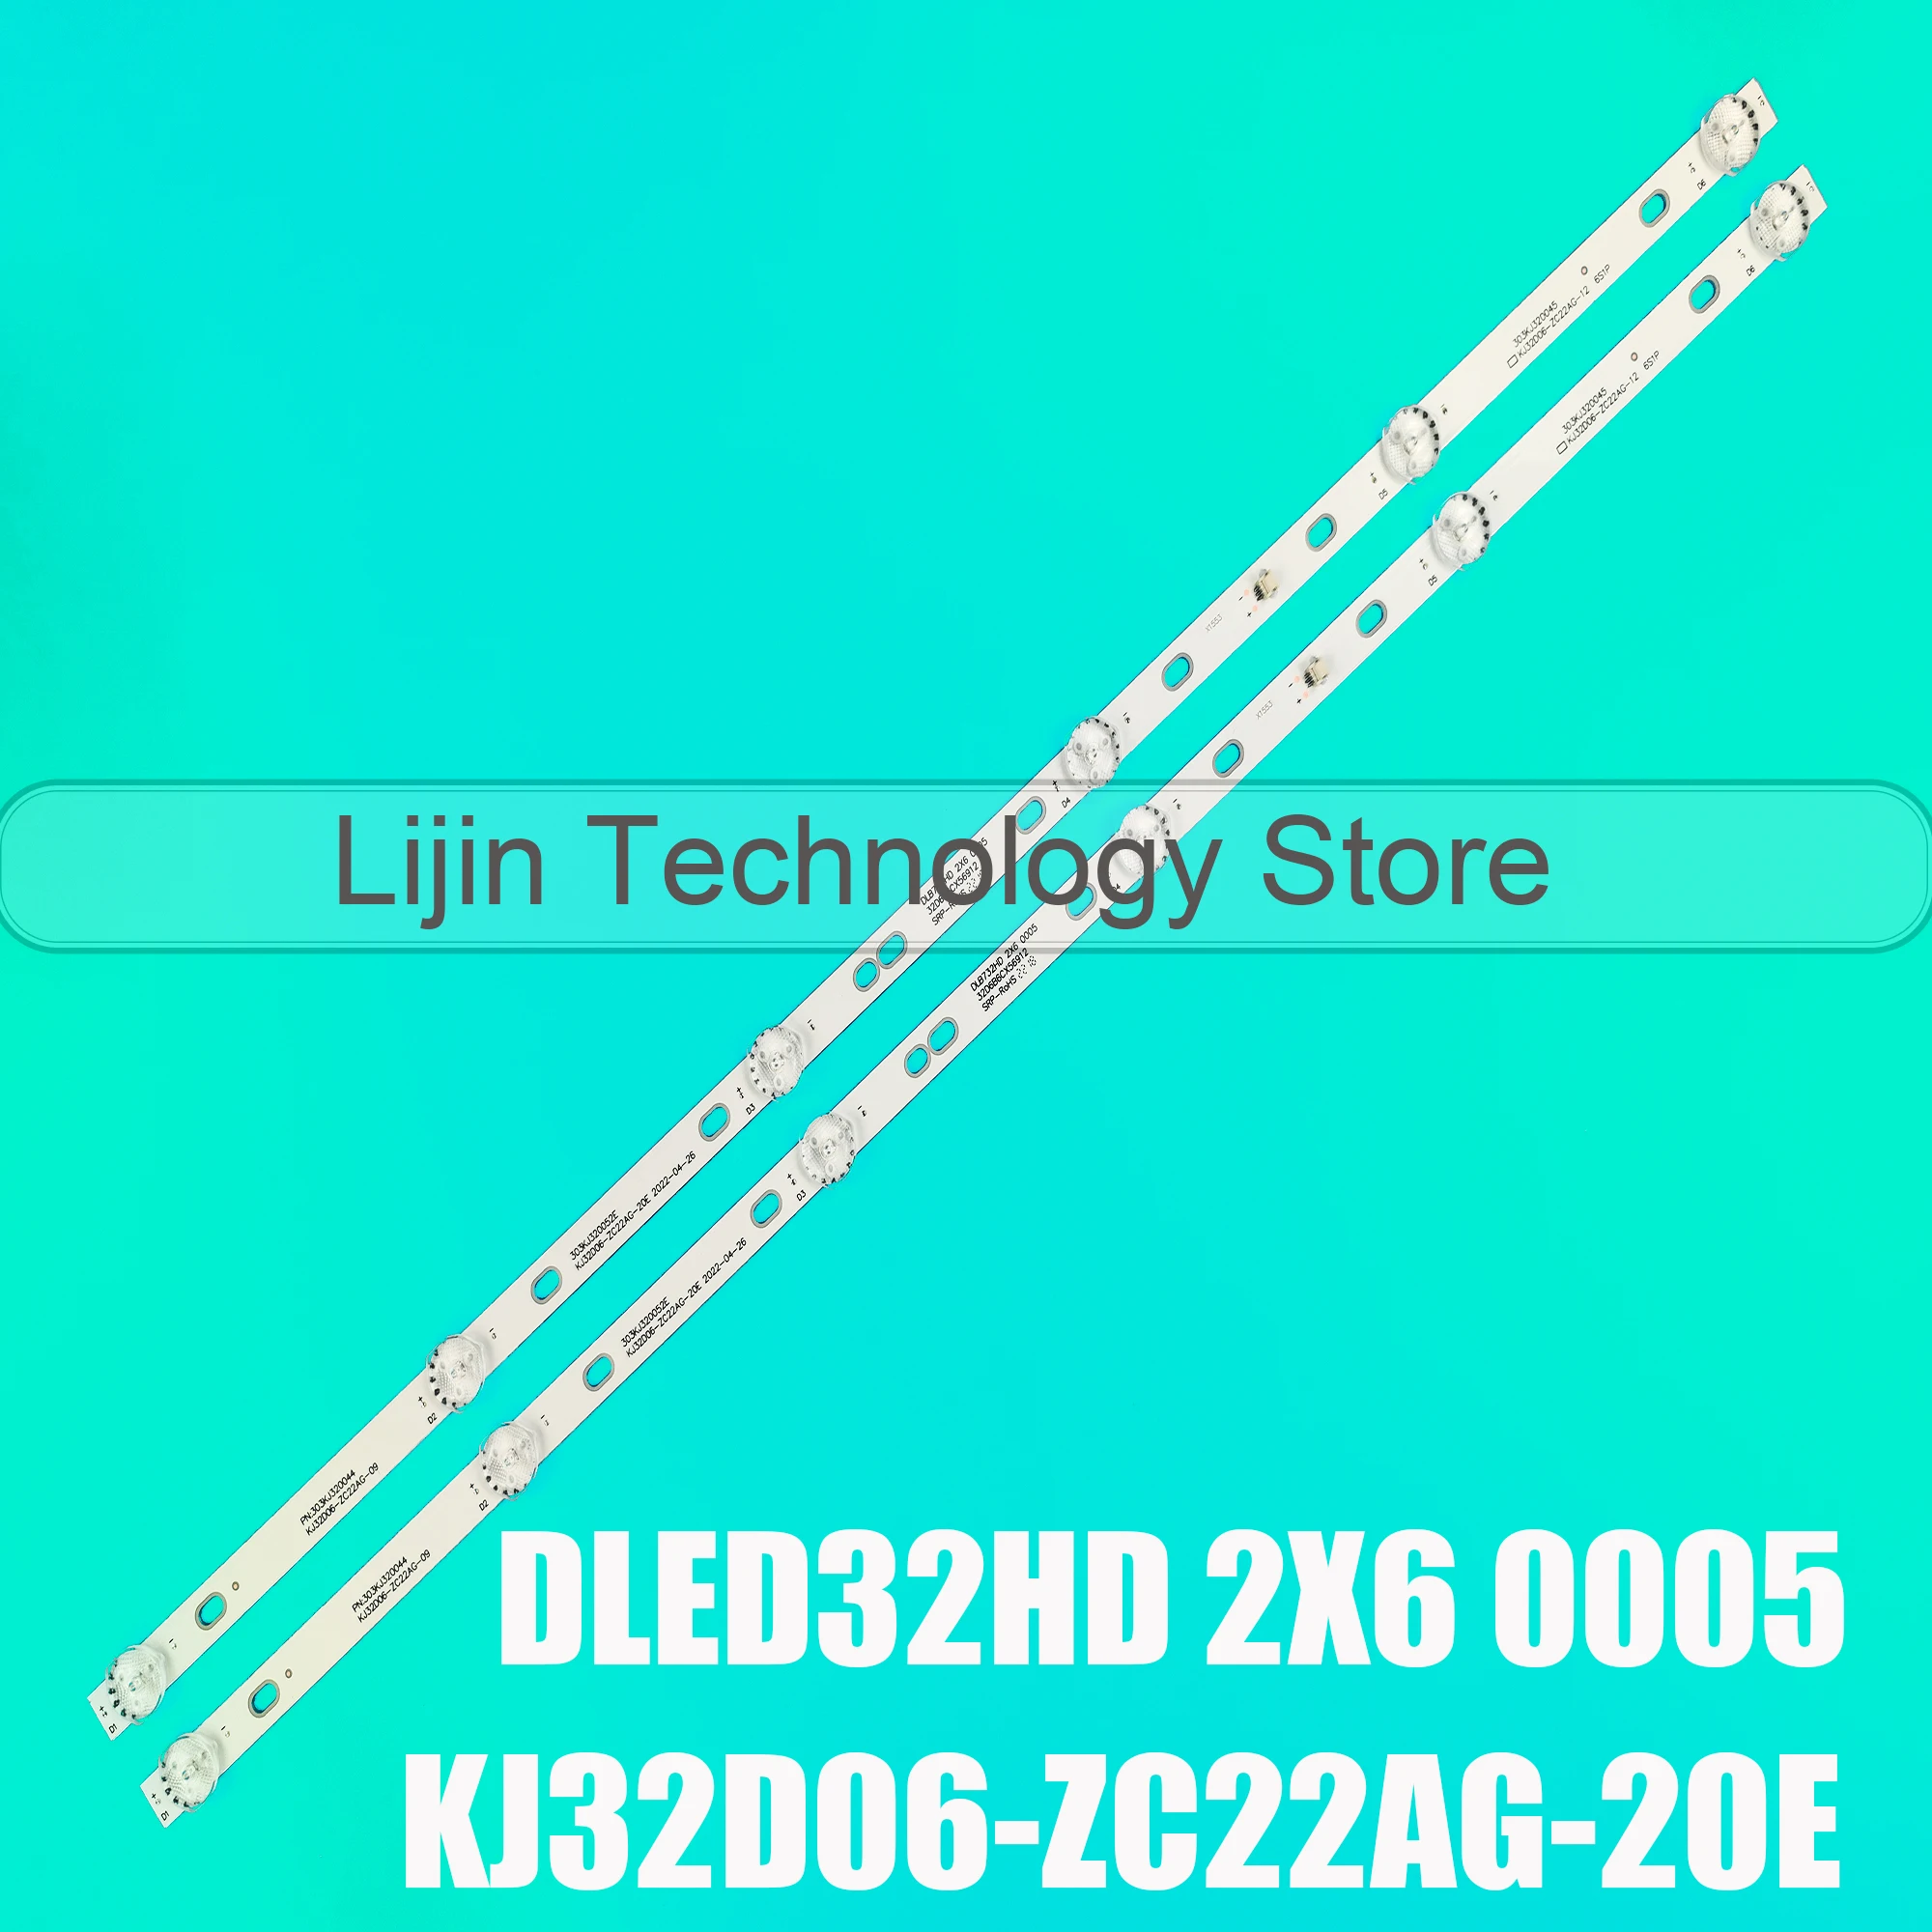 

LED Backlight Strip For DLED32HD 2X6 0005 HTV-32R01-T2C/A4/B 32LH0202 32HH1830 PK-32D16T KJ32D06-ZC22AG-20E 09 12 303KJ320044